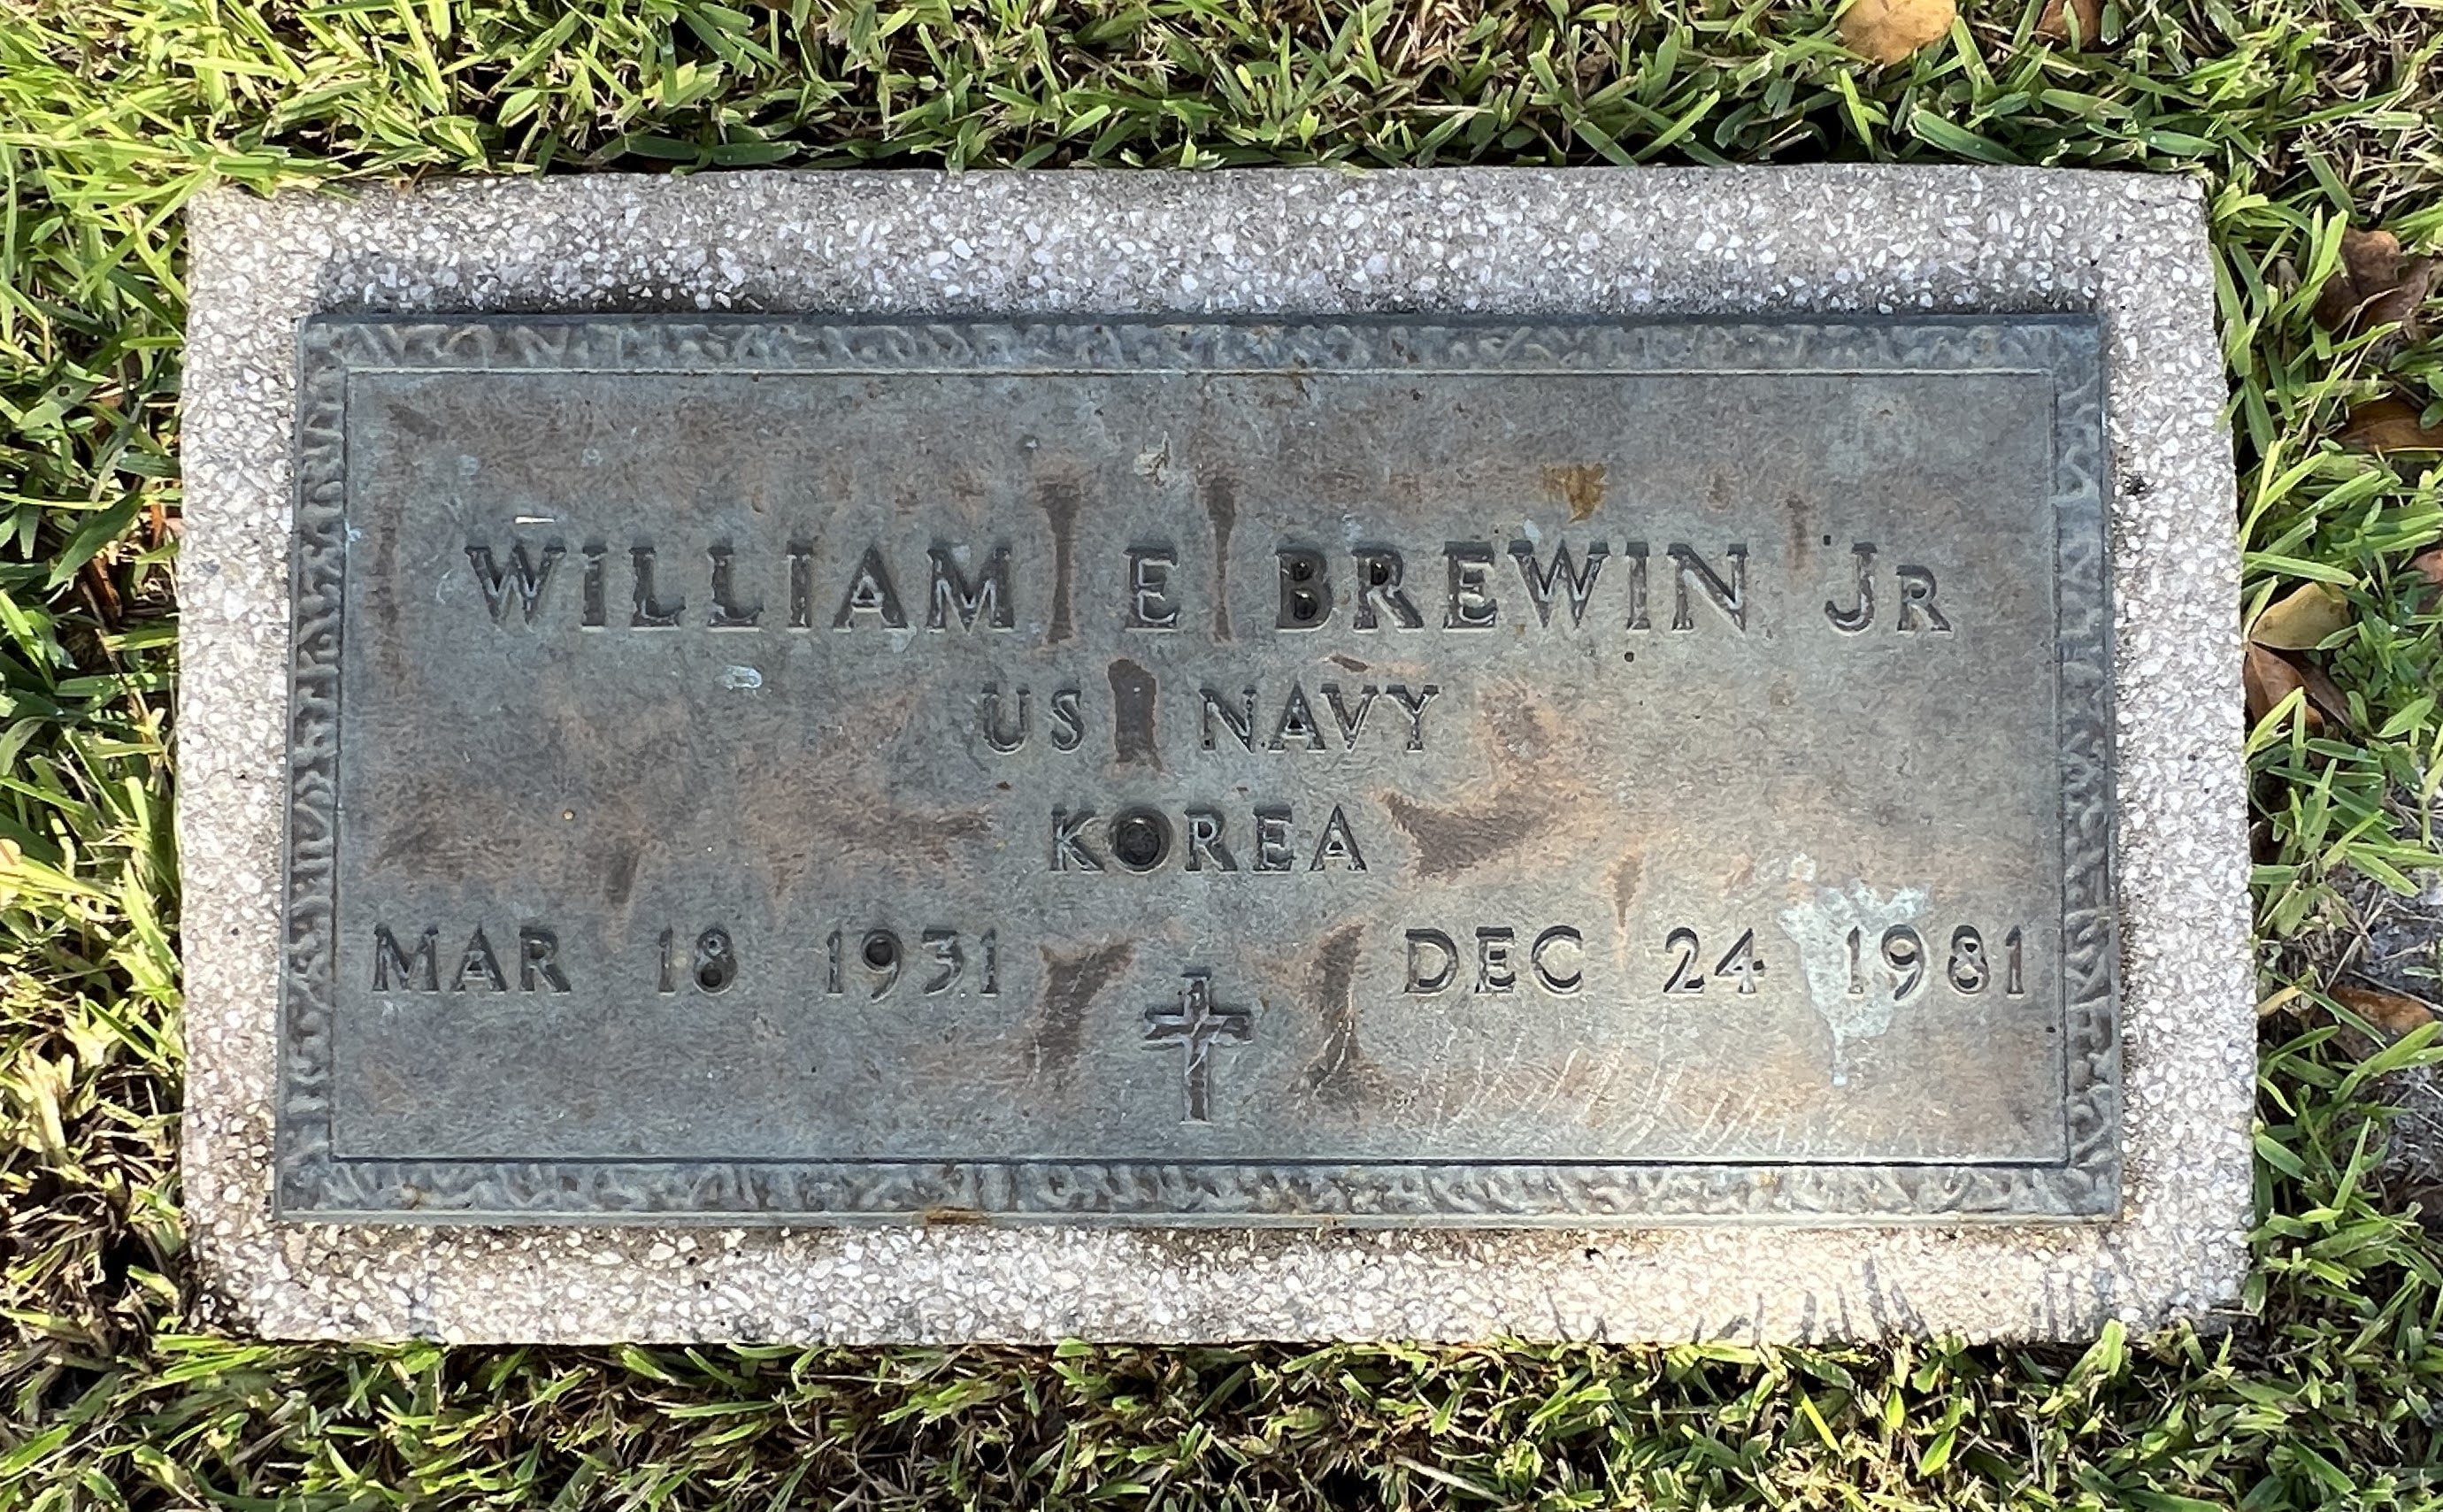 William E Brewin, Jr